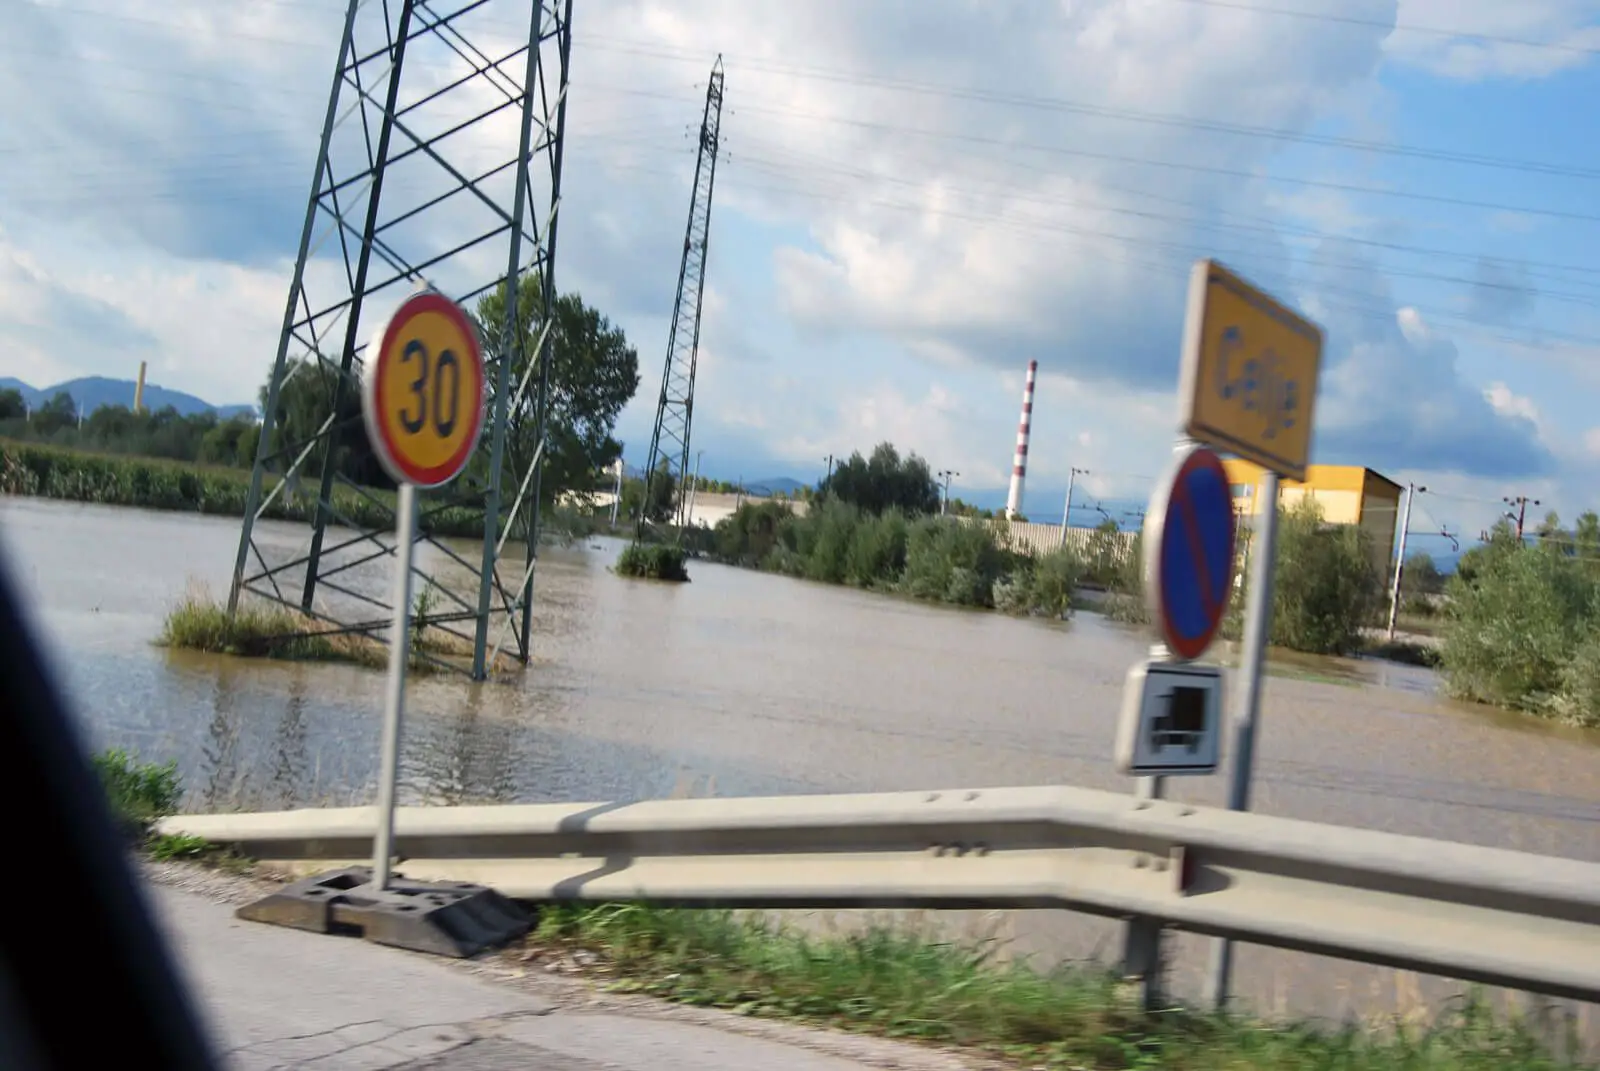 brane petrovič & borut podgoršek, mors - mors.si 2010_floods_in_celje.jpg